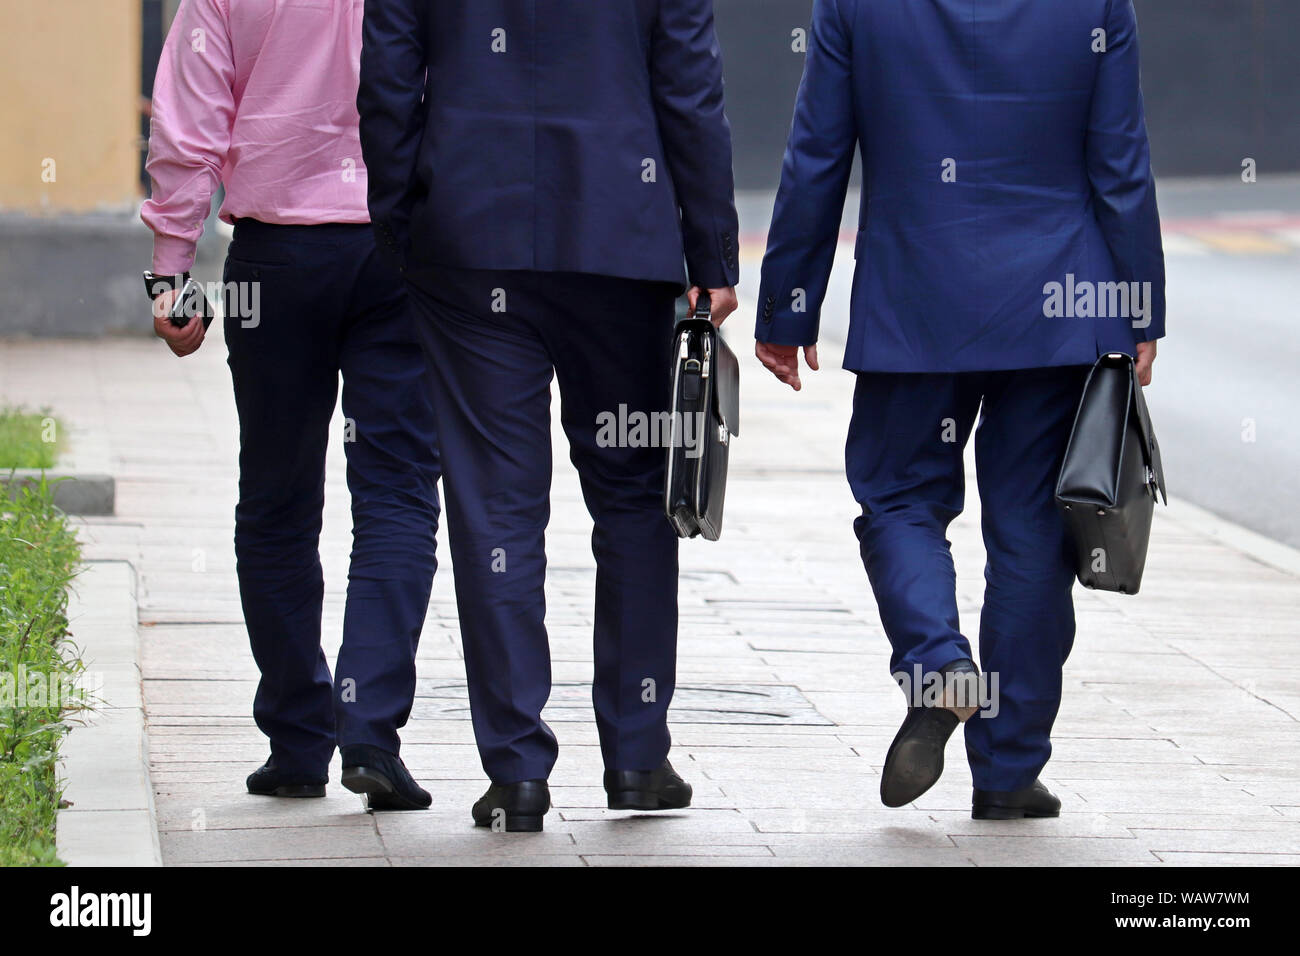 Männer in Anzügen mit Aktentaschen gehen auf eine Straße, Ansicht von  hinten. Konzept der stilvolle erfolgreiche Menschen, Partner,  Geschäftsleute, Offizielle, Karriere Stockfotografie - Alamy